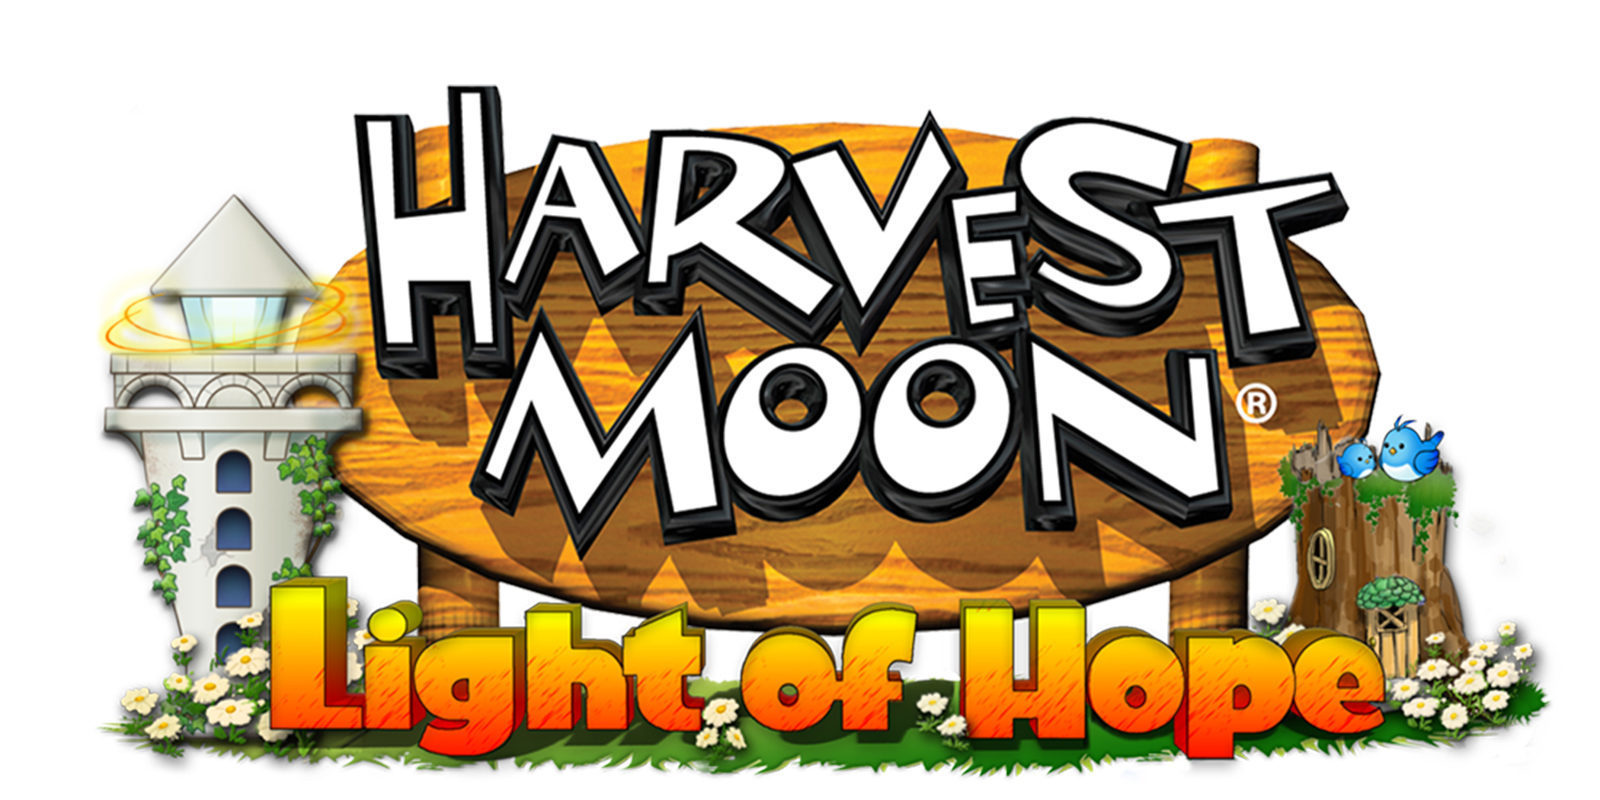 'Harvest Moon: Light of Hope' anunciado para Nintendo Switch, PS4 y PC